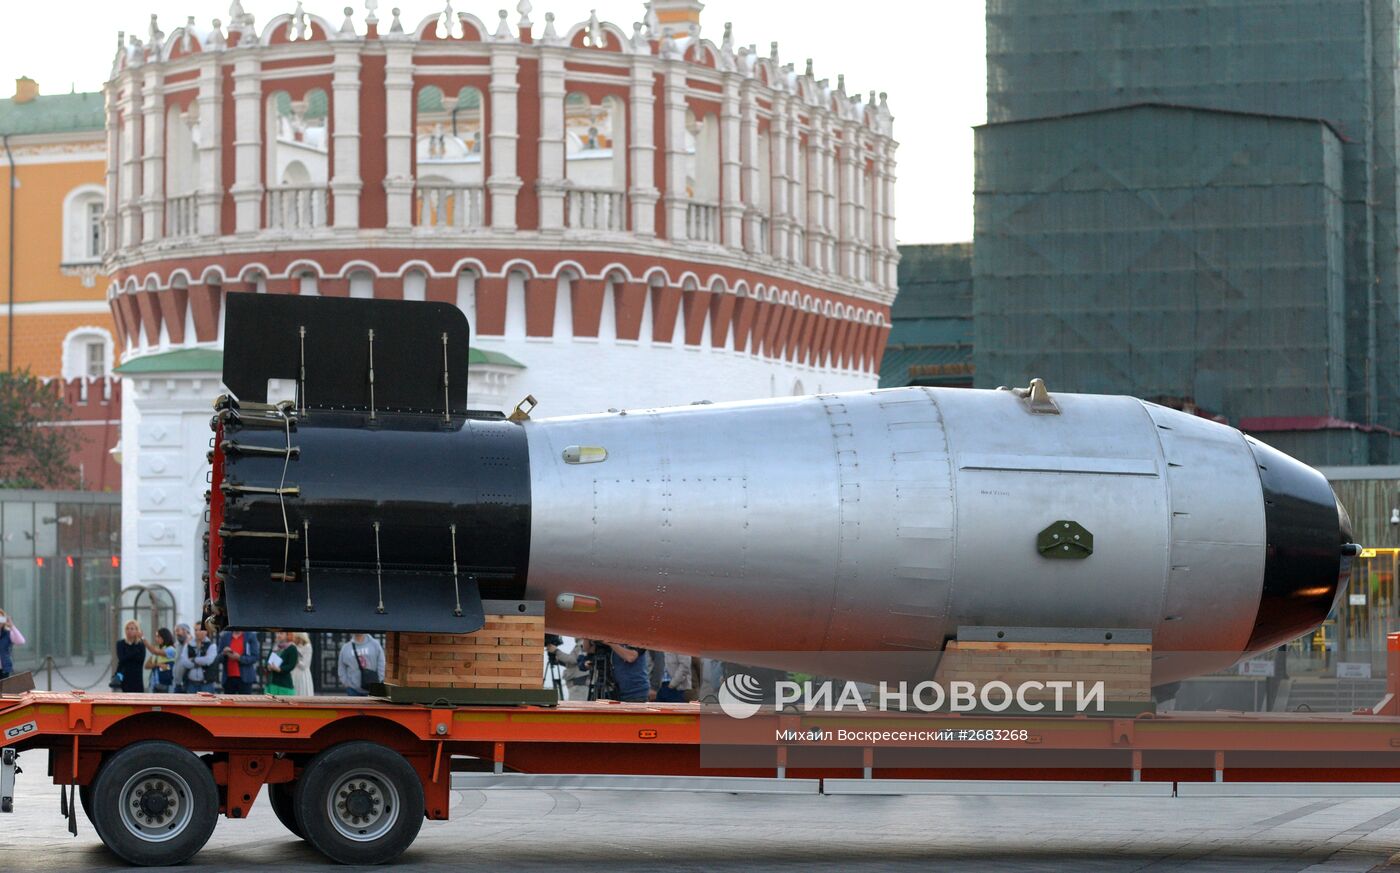 Копия термоядерной "Царь-бомбы" доставлена в Москву